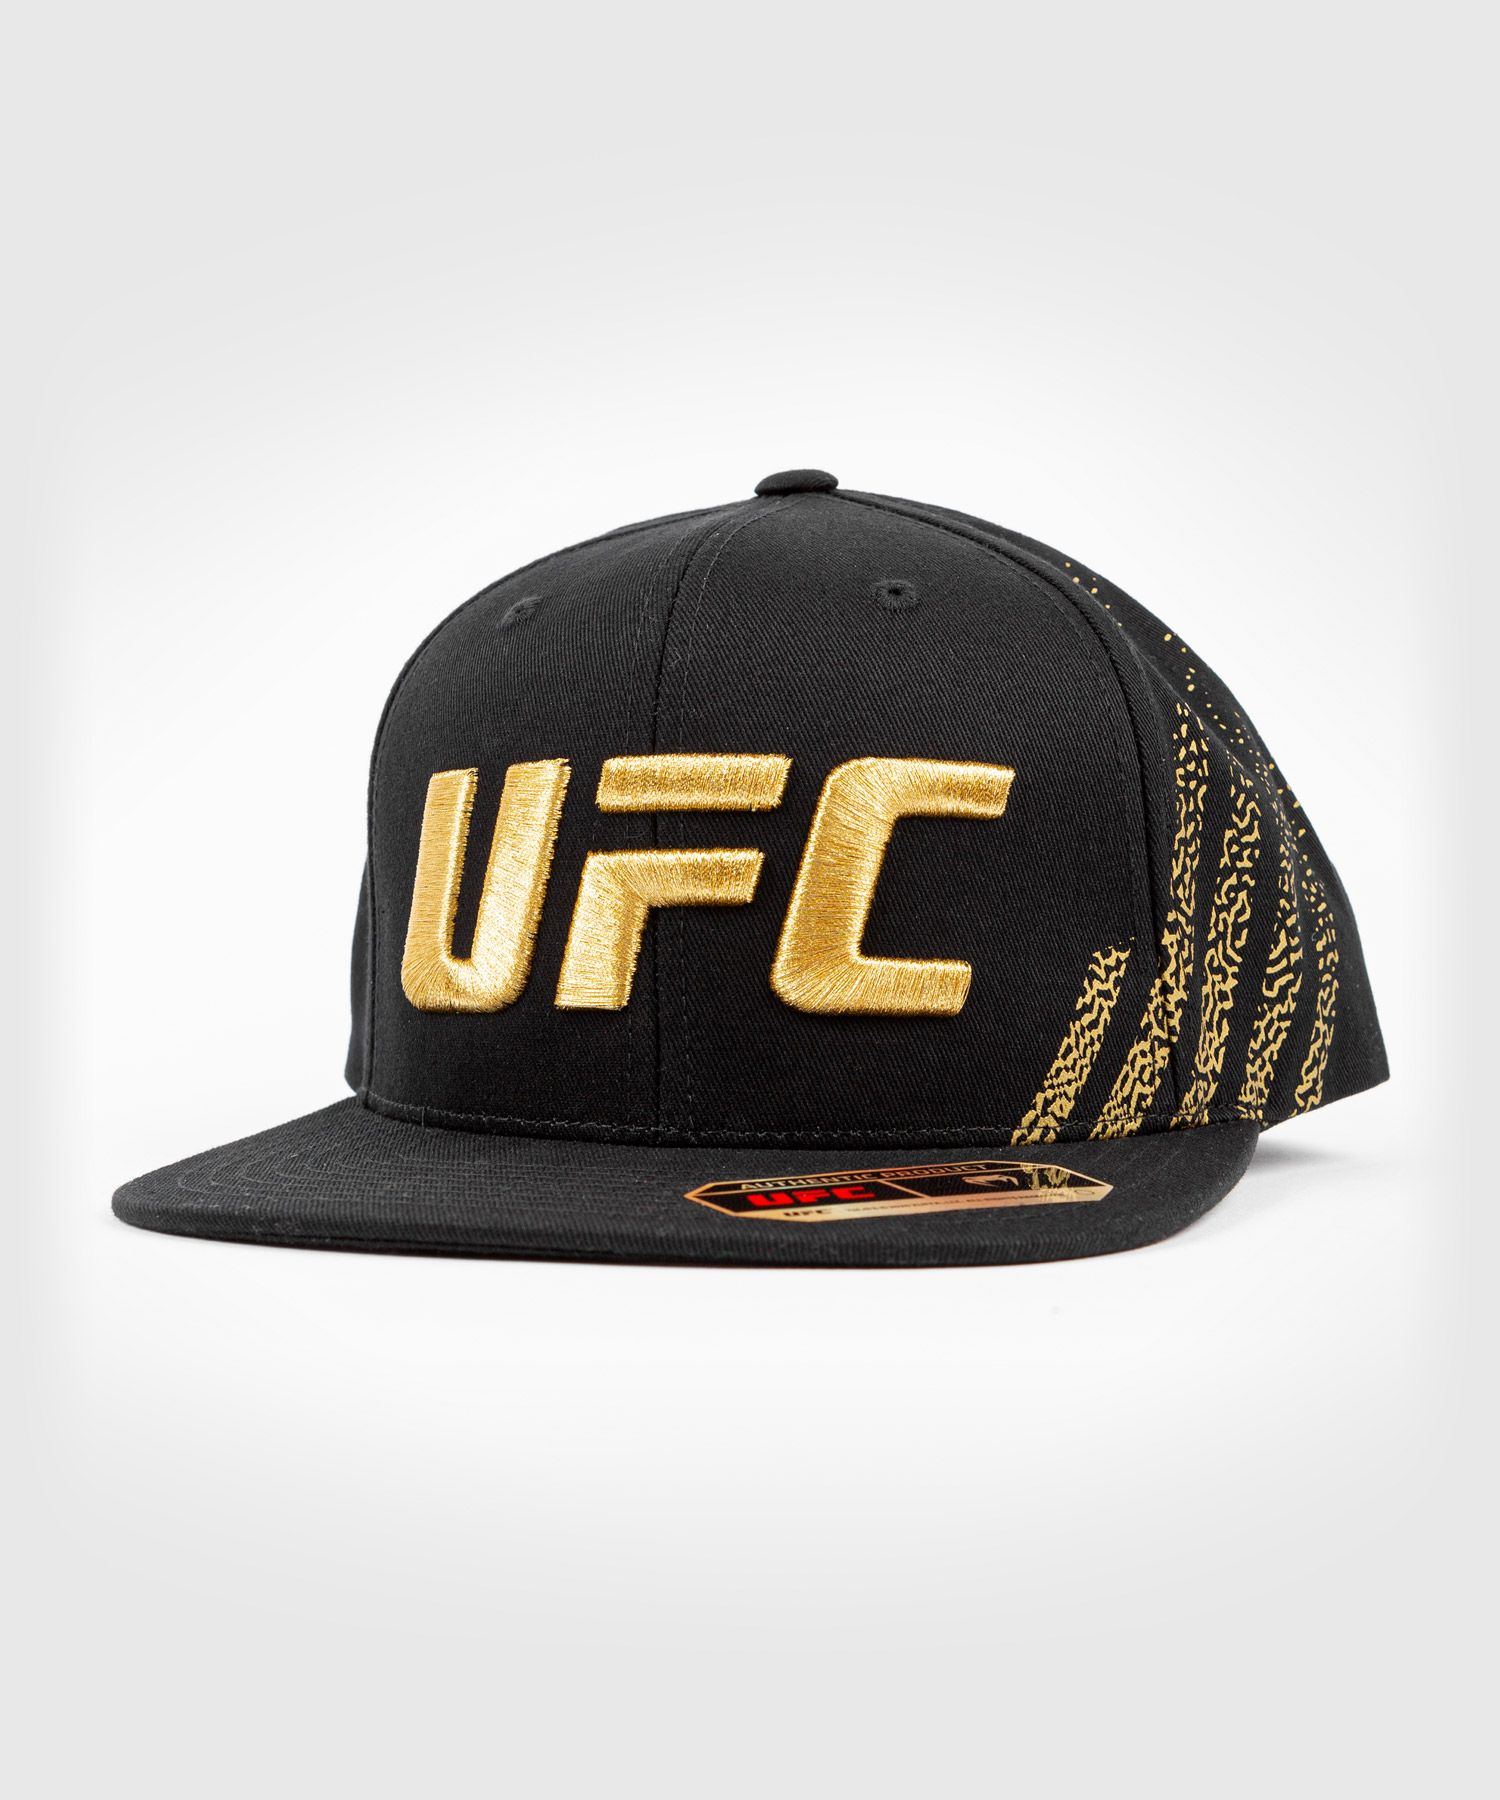 Casquette UFC Venum Authentic Fight Night - Champion